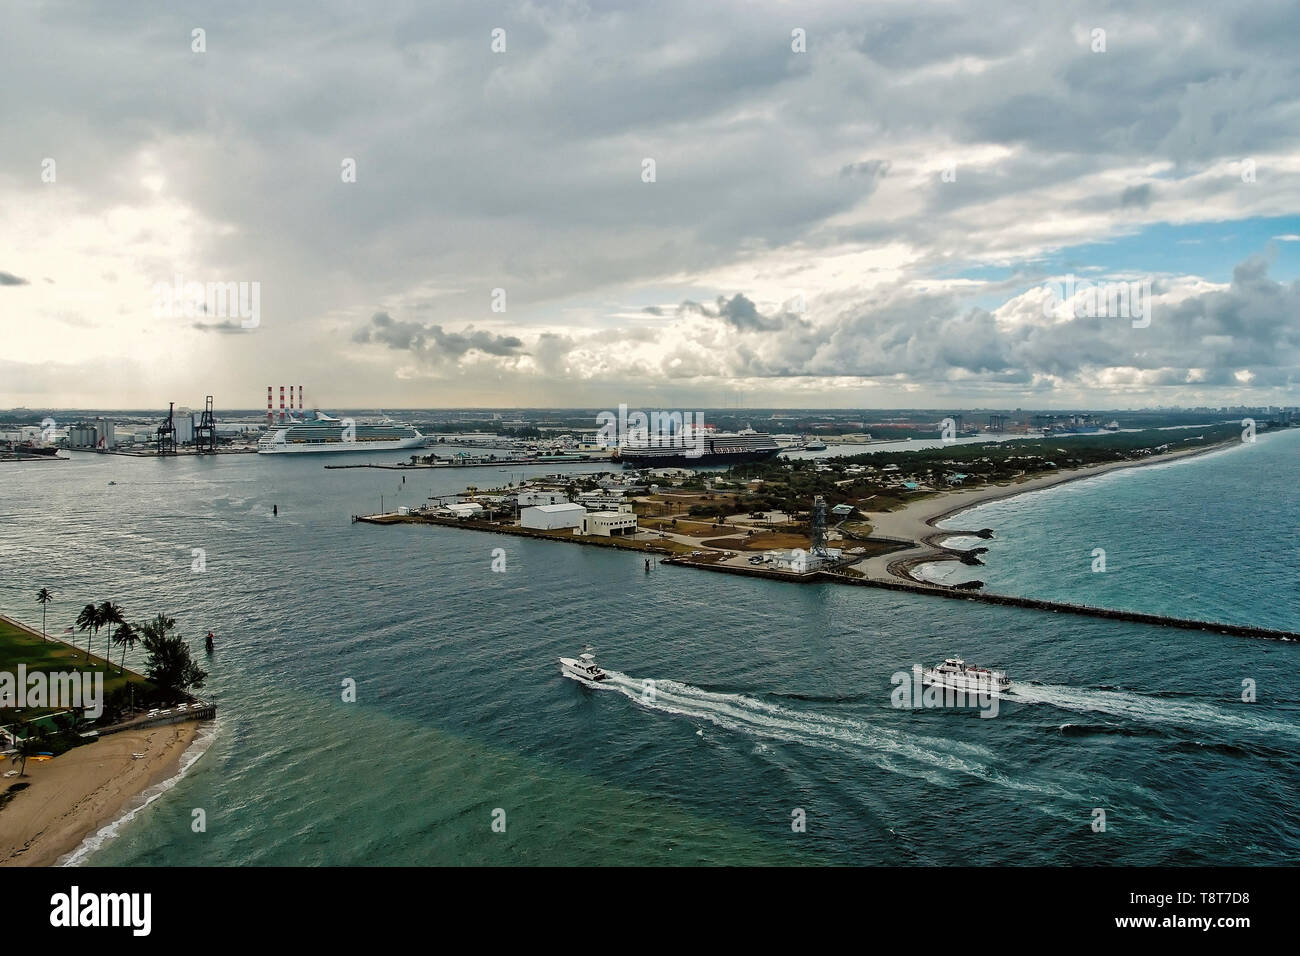 Bateaux flottant sur l'eau de mer bleue avec des navires au port sur fond de ciel nuageux sur les toits en Fort Lauderdale, Etats-Unis. Tourisme et destination touristique. Les vacances d'été et les voyages concept Banque D'Images